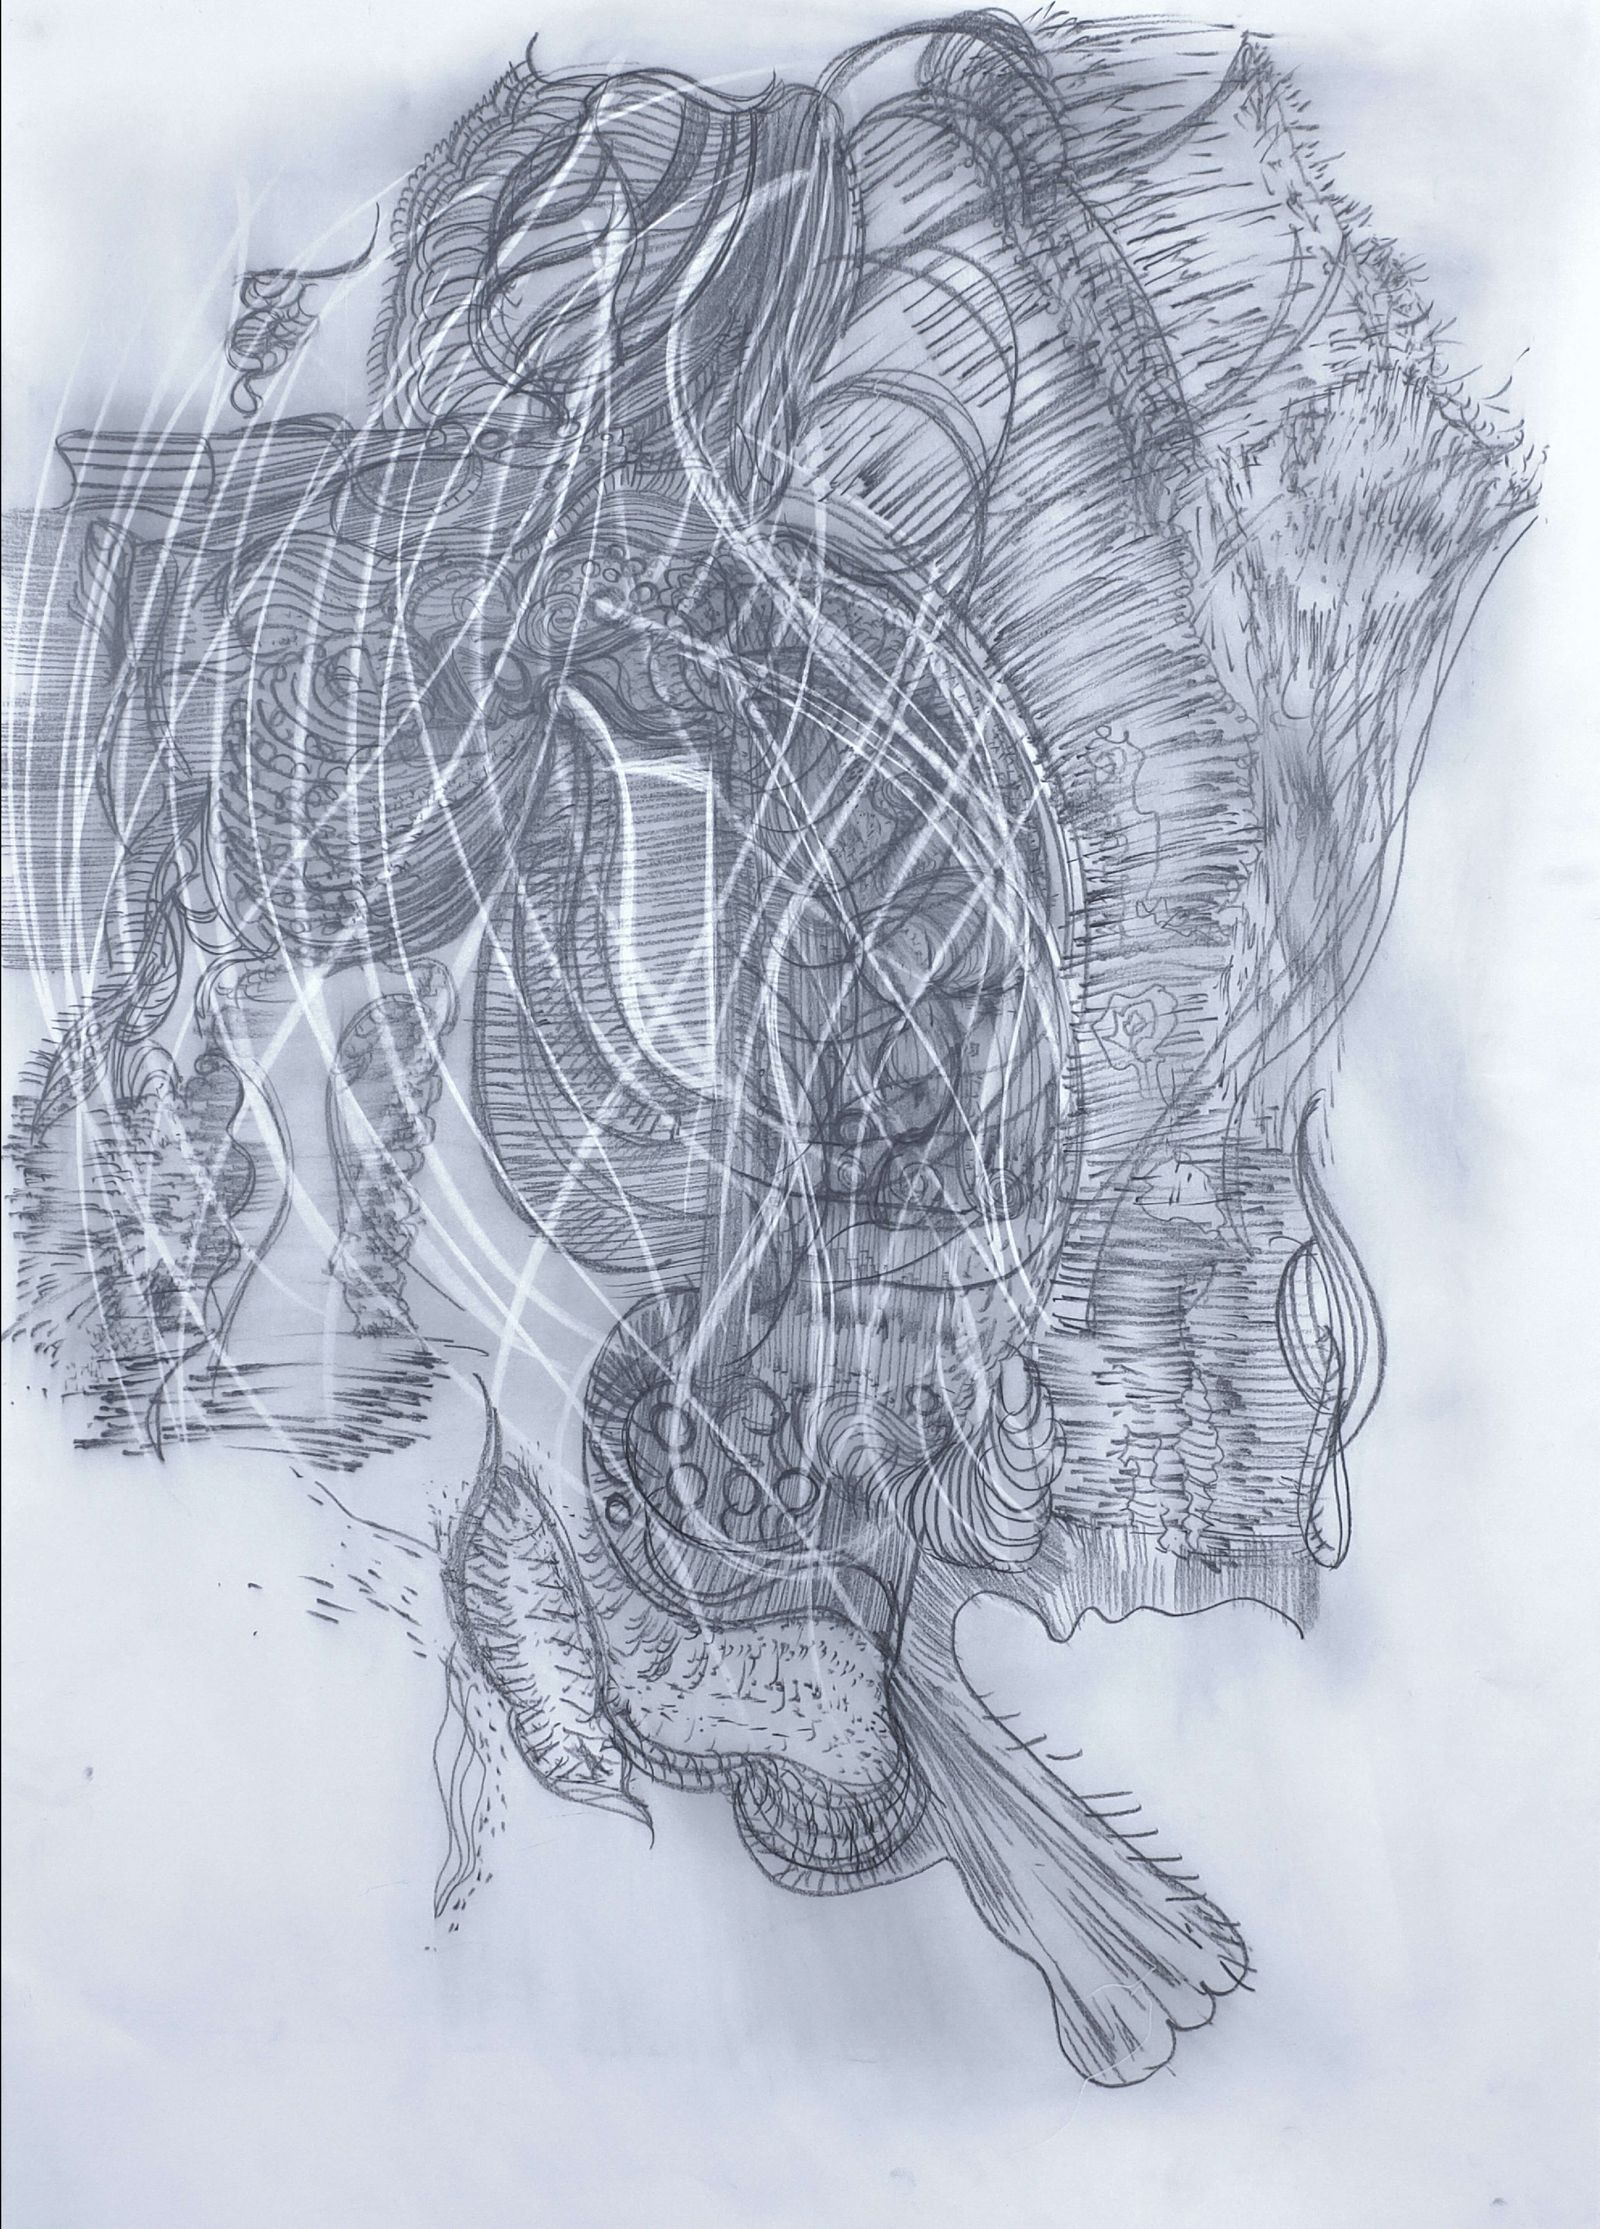 Haci Sami Yaman, Hang up the mask, 2018, 70 X 100 cm, Zeichnung auf Papier